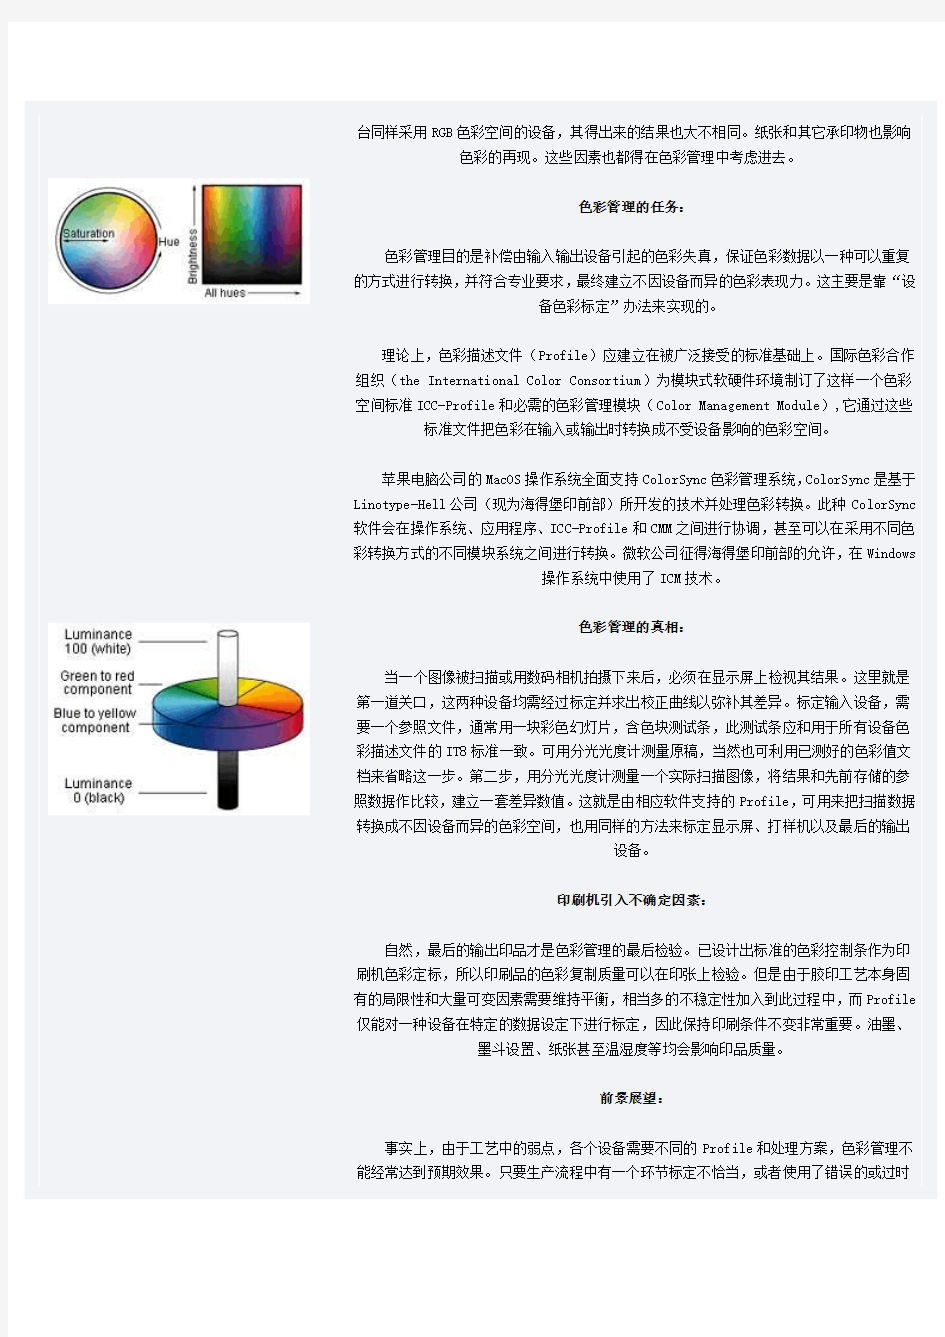 色彩管理(Color Management)